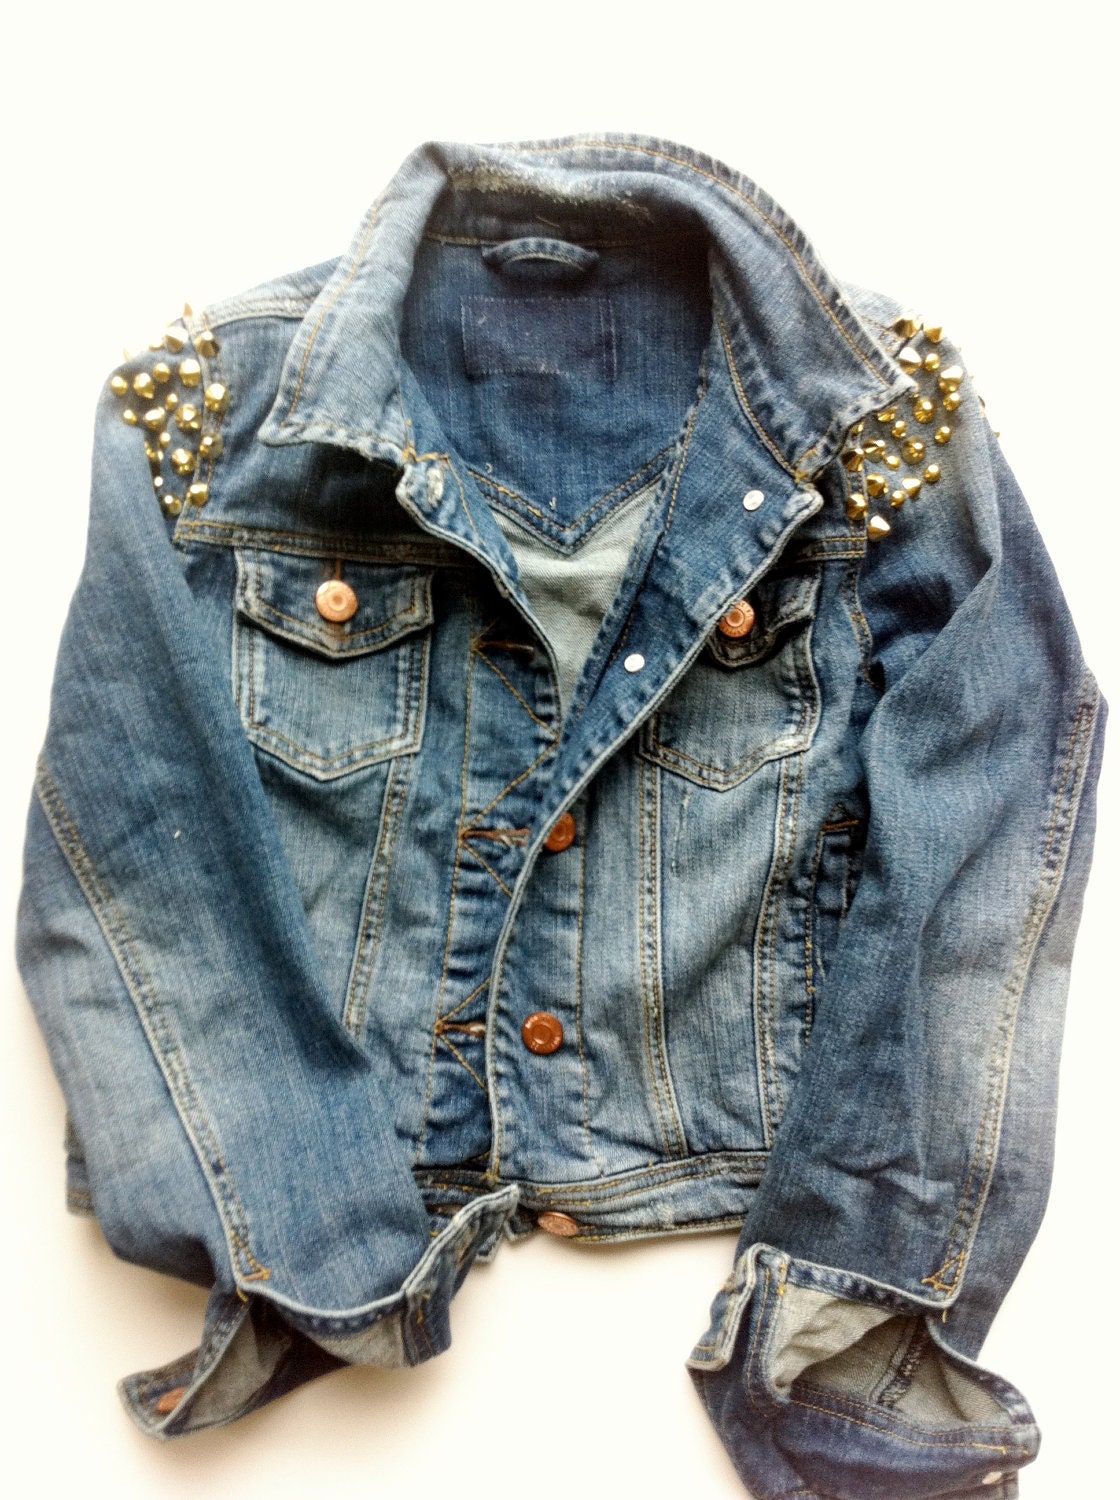 Vintage Distressed Studded Denim Jean Jacket by shophoyden on Etsy